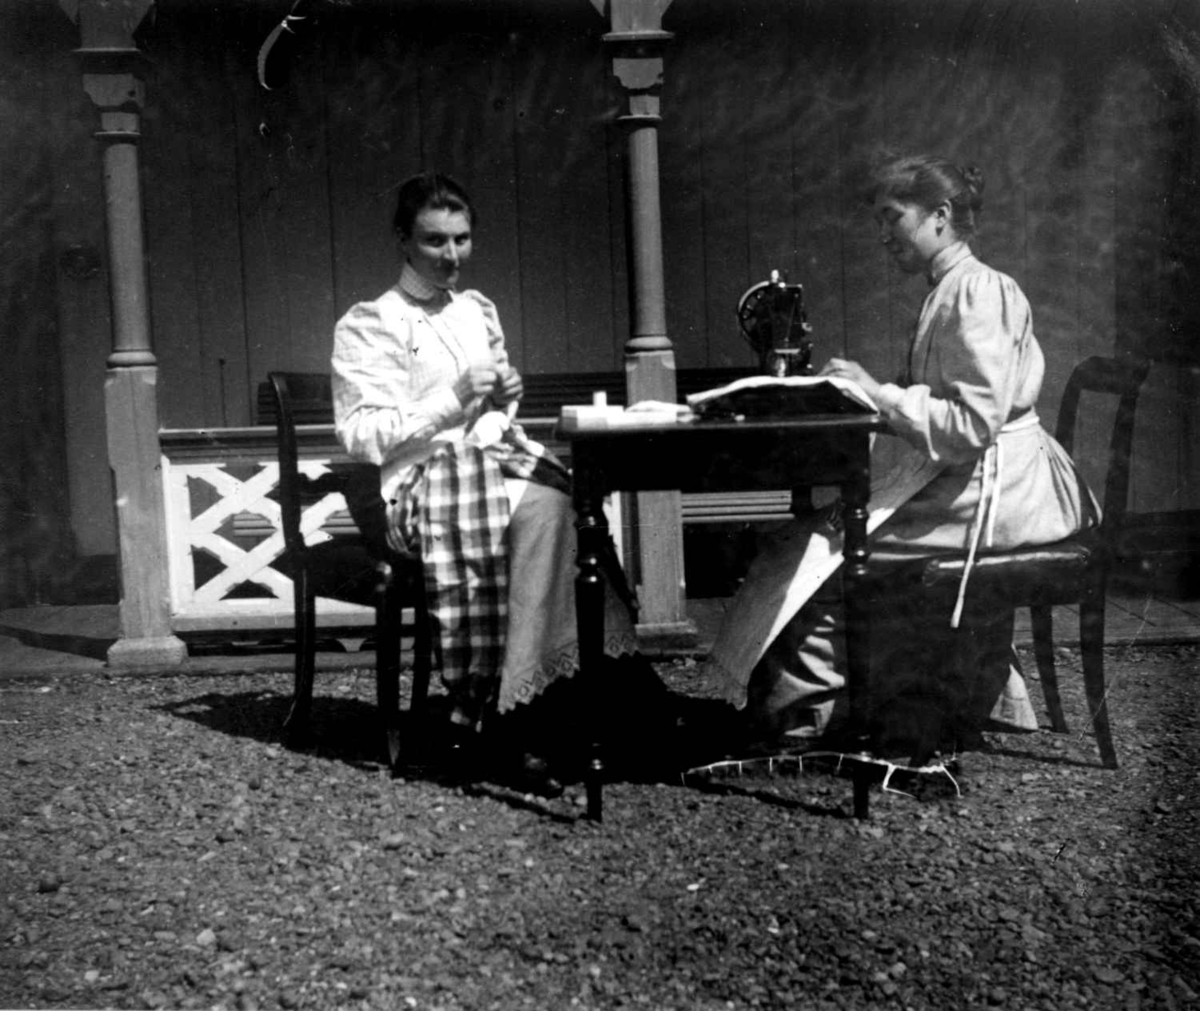 Sypiker, Dal gård, Ullensaker, ca. 1893. To kvinner med søm utendørs, den ene på symaskin.
Fra portrettserie av personer som bodde på eller besøkte Dal gård, Ullensaker, fotografert av gårdens eier, kammerherre Fredrik Emil Faye (1844-1903) i årene 1875-1900.